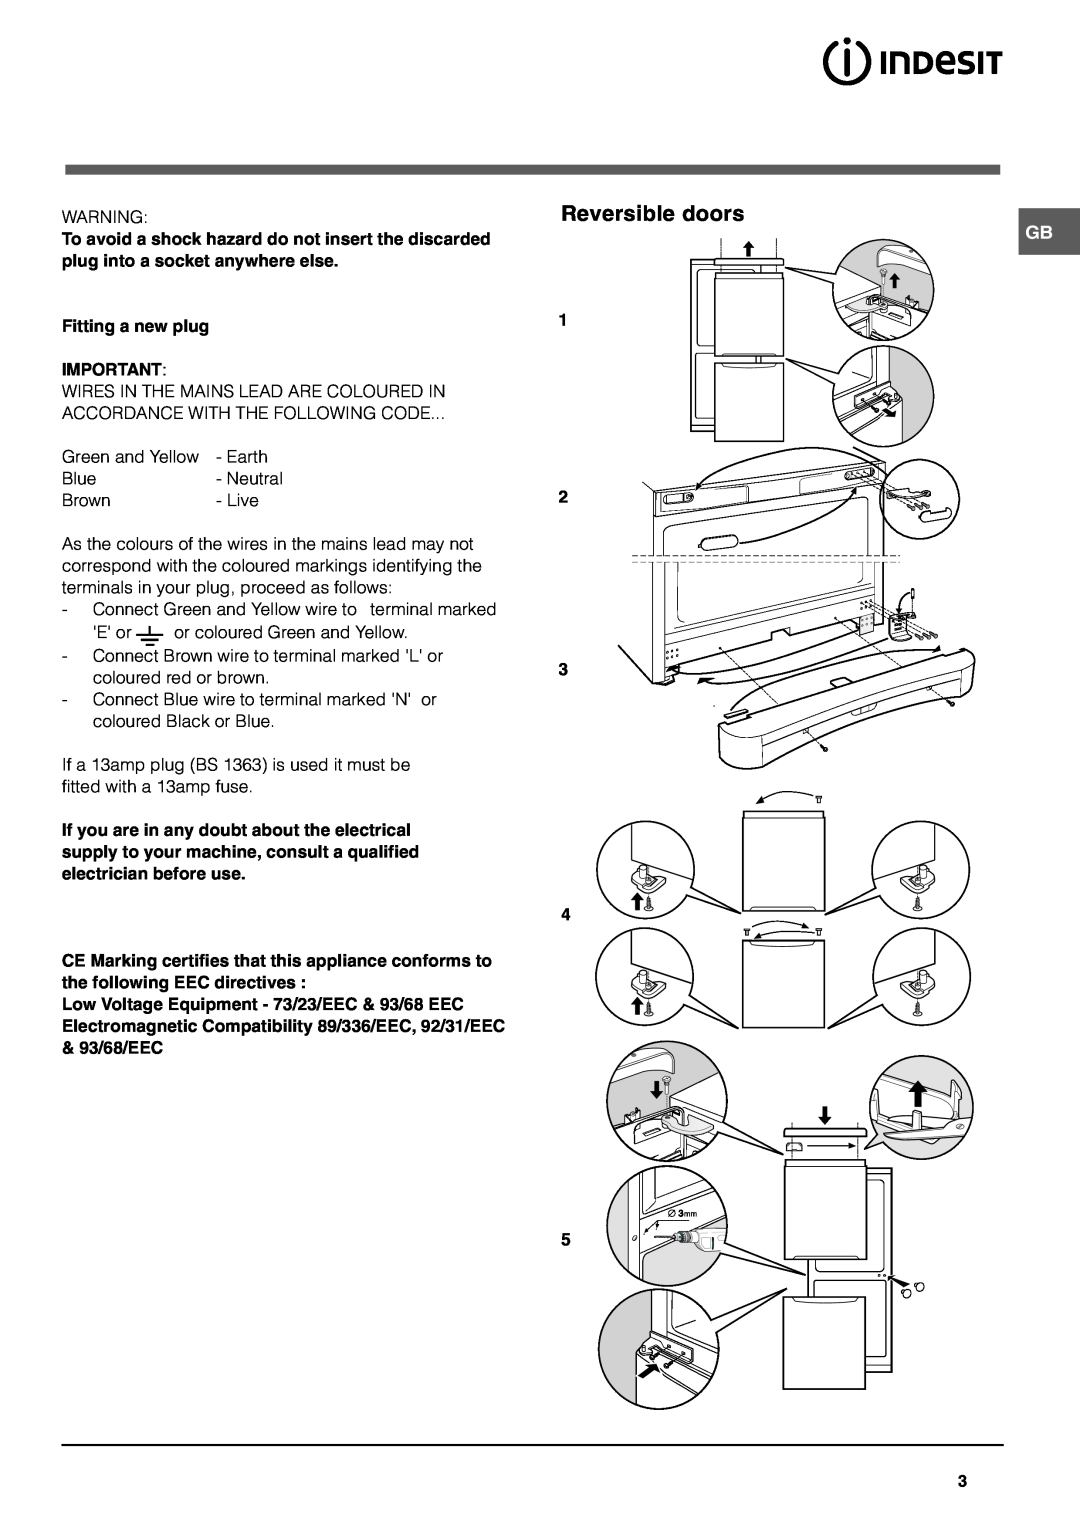 Indesit BAAN 12s operating instructions Reversible doors, 1 2 3 